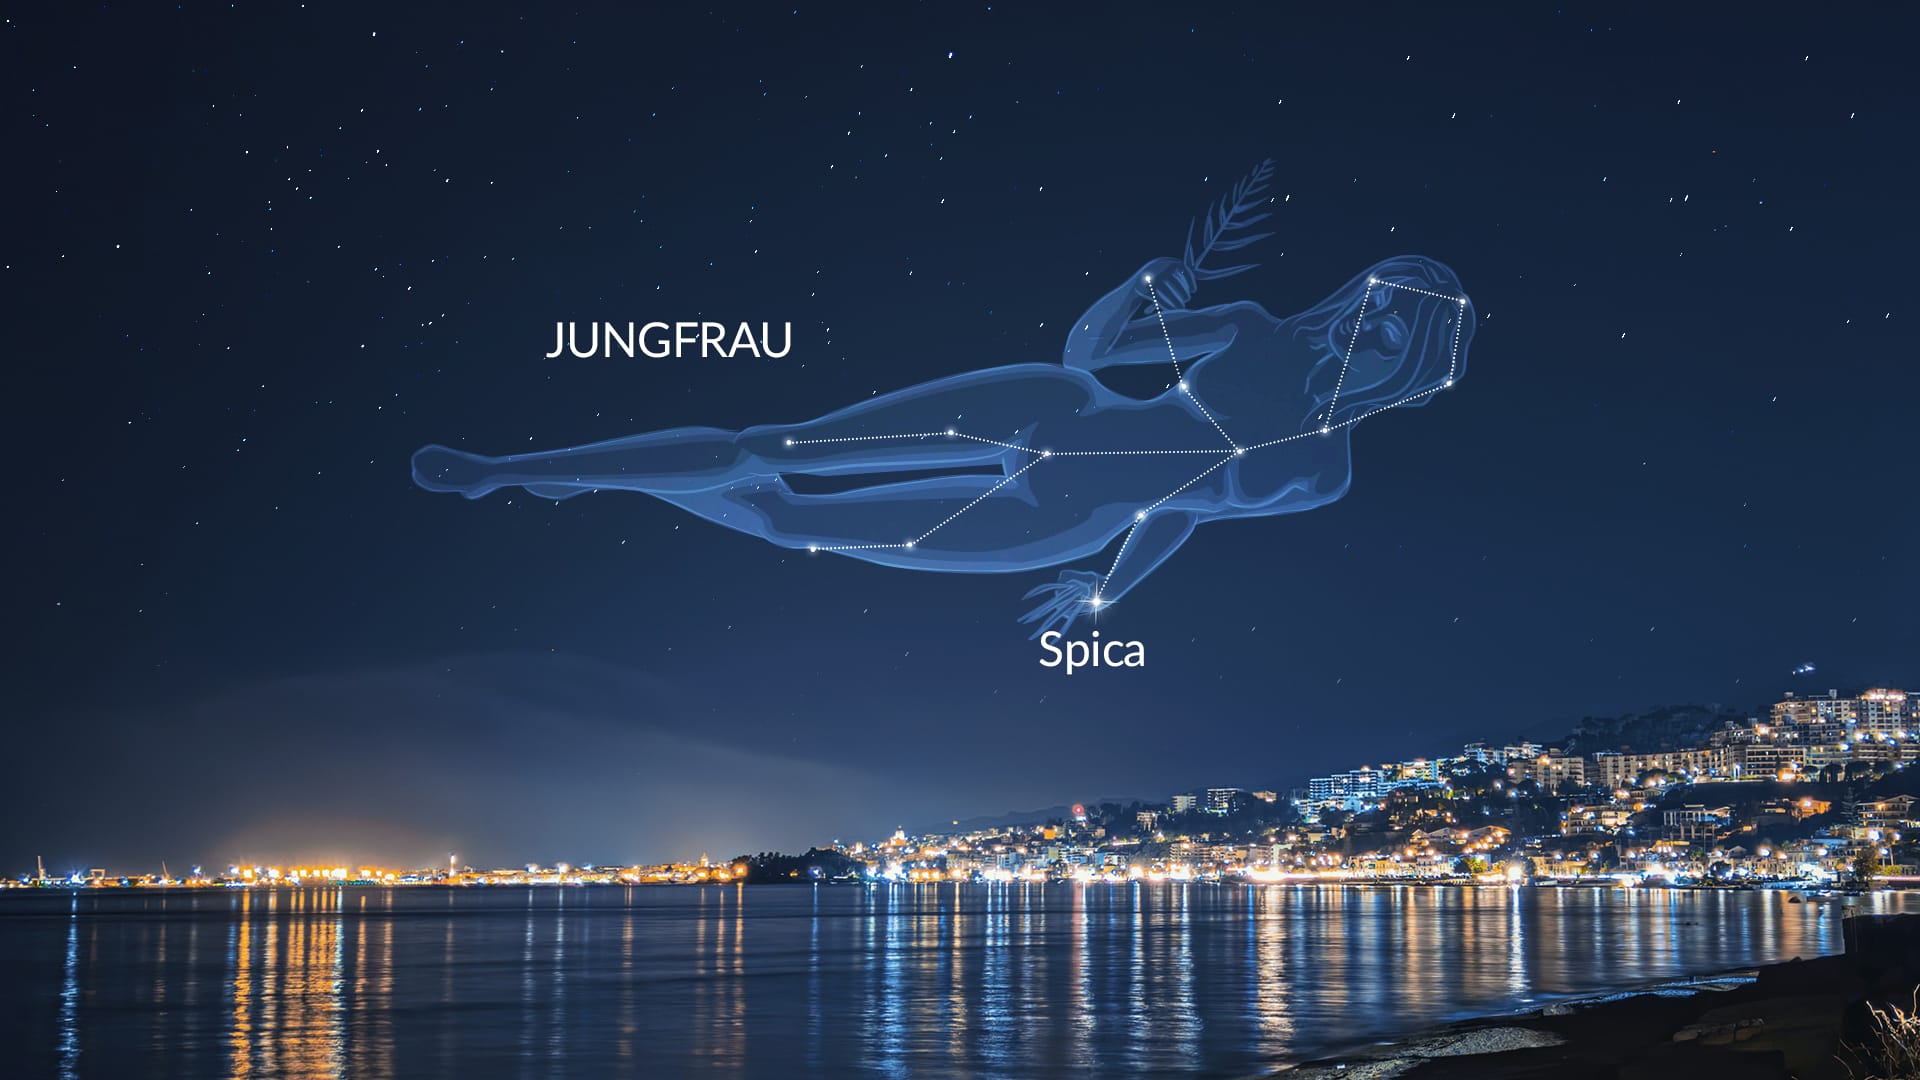 Spica: Virgo's Brightest Star